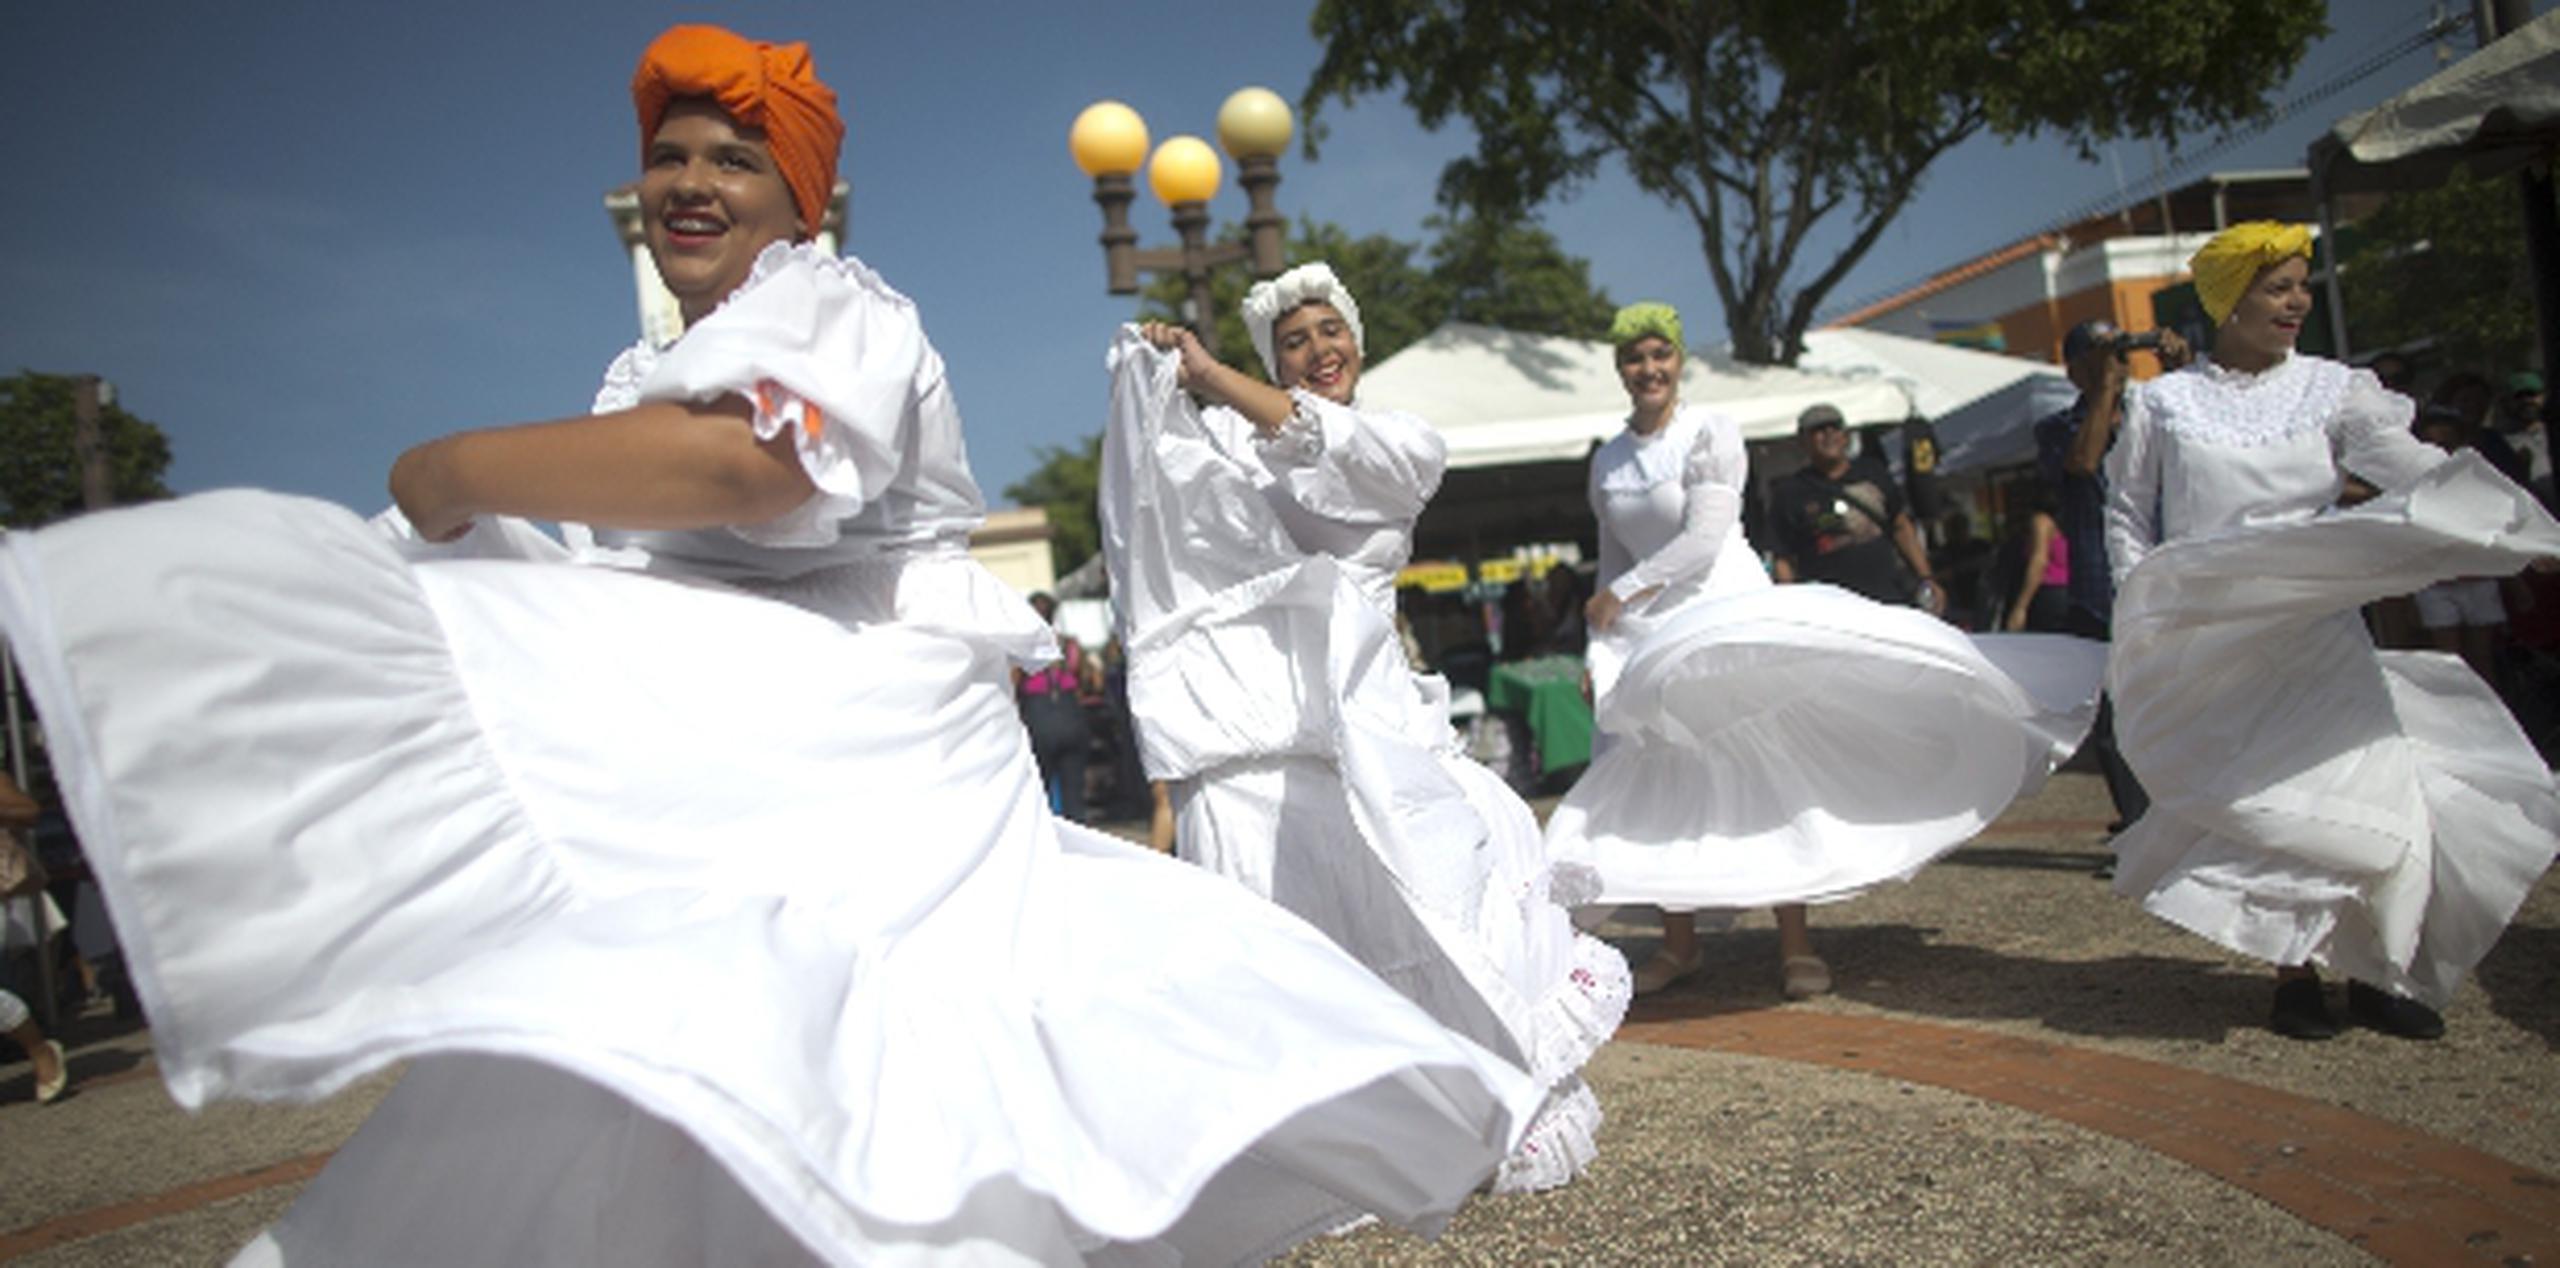 Las calles del casco urbano de Hatillo se llenaron de música, baile, vejigantes y cabezudos. (xavier.araujo@gfrmedia.com)